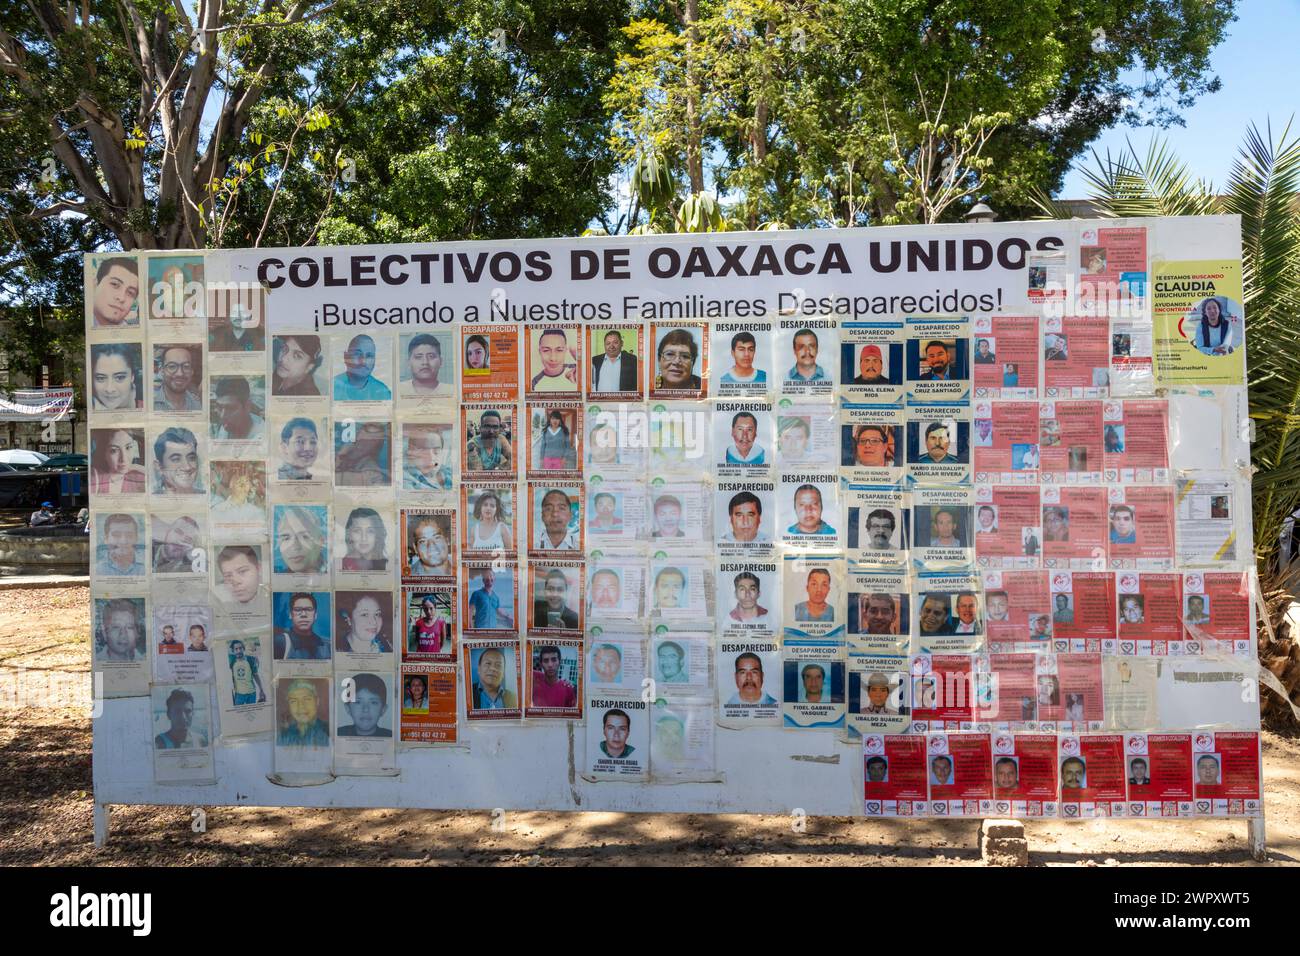 Oaxaca, Mexique - Un panneau d'affichage dans le zocalo montre les visages de personnes disparues. Au fil des ans, beaucoup ont disparu aux mains de gangs Banque D'Images